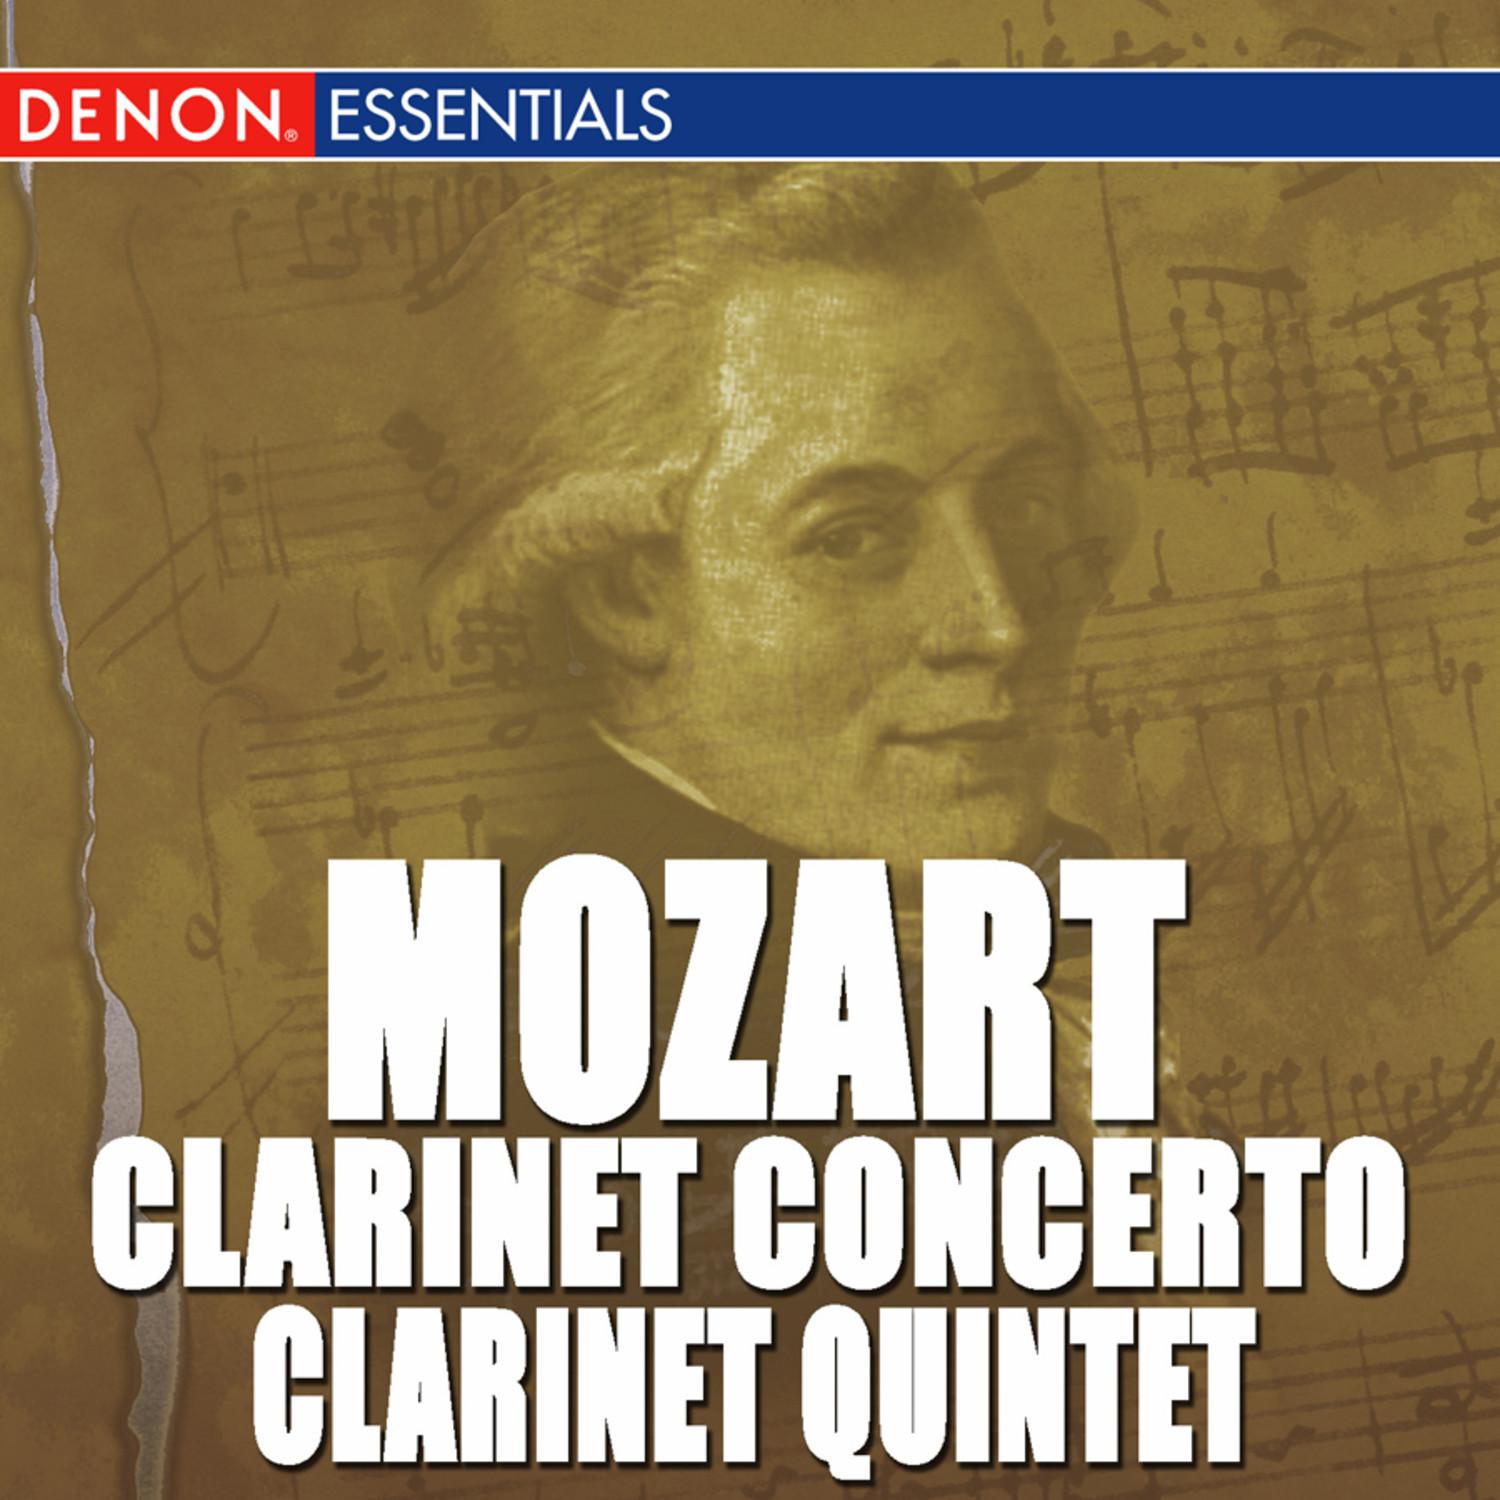 Clarinet Concerto in A Major, K. 622: III. Rondo